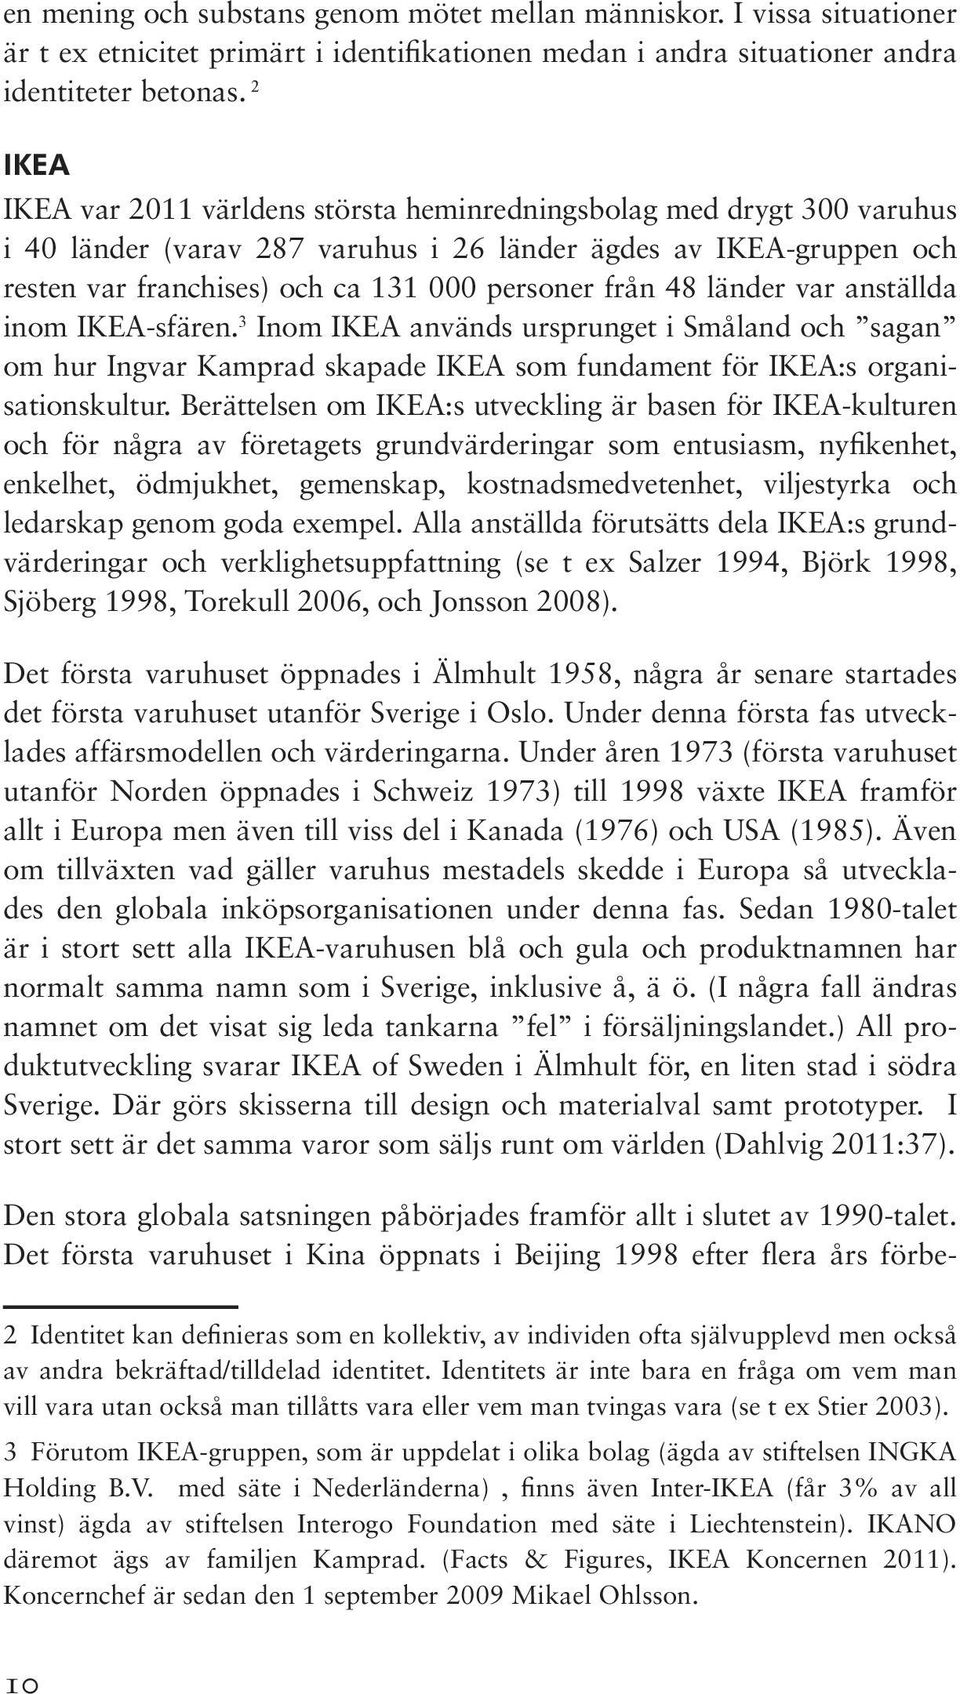 48 länder var anställda inom IKEA-sfären. 3 Inom IKEA används ursprunget i Småland och sagan om hur Ingvar Kamprad skapade IKEA som fundament för IKEA:s organisationskultur.